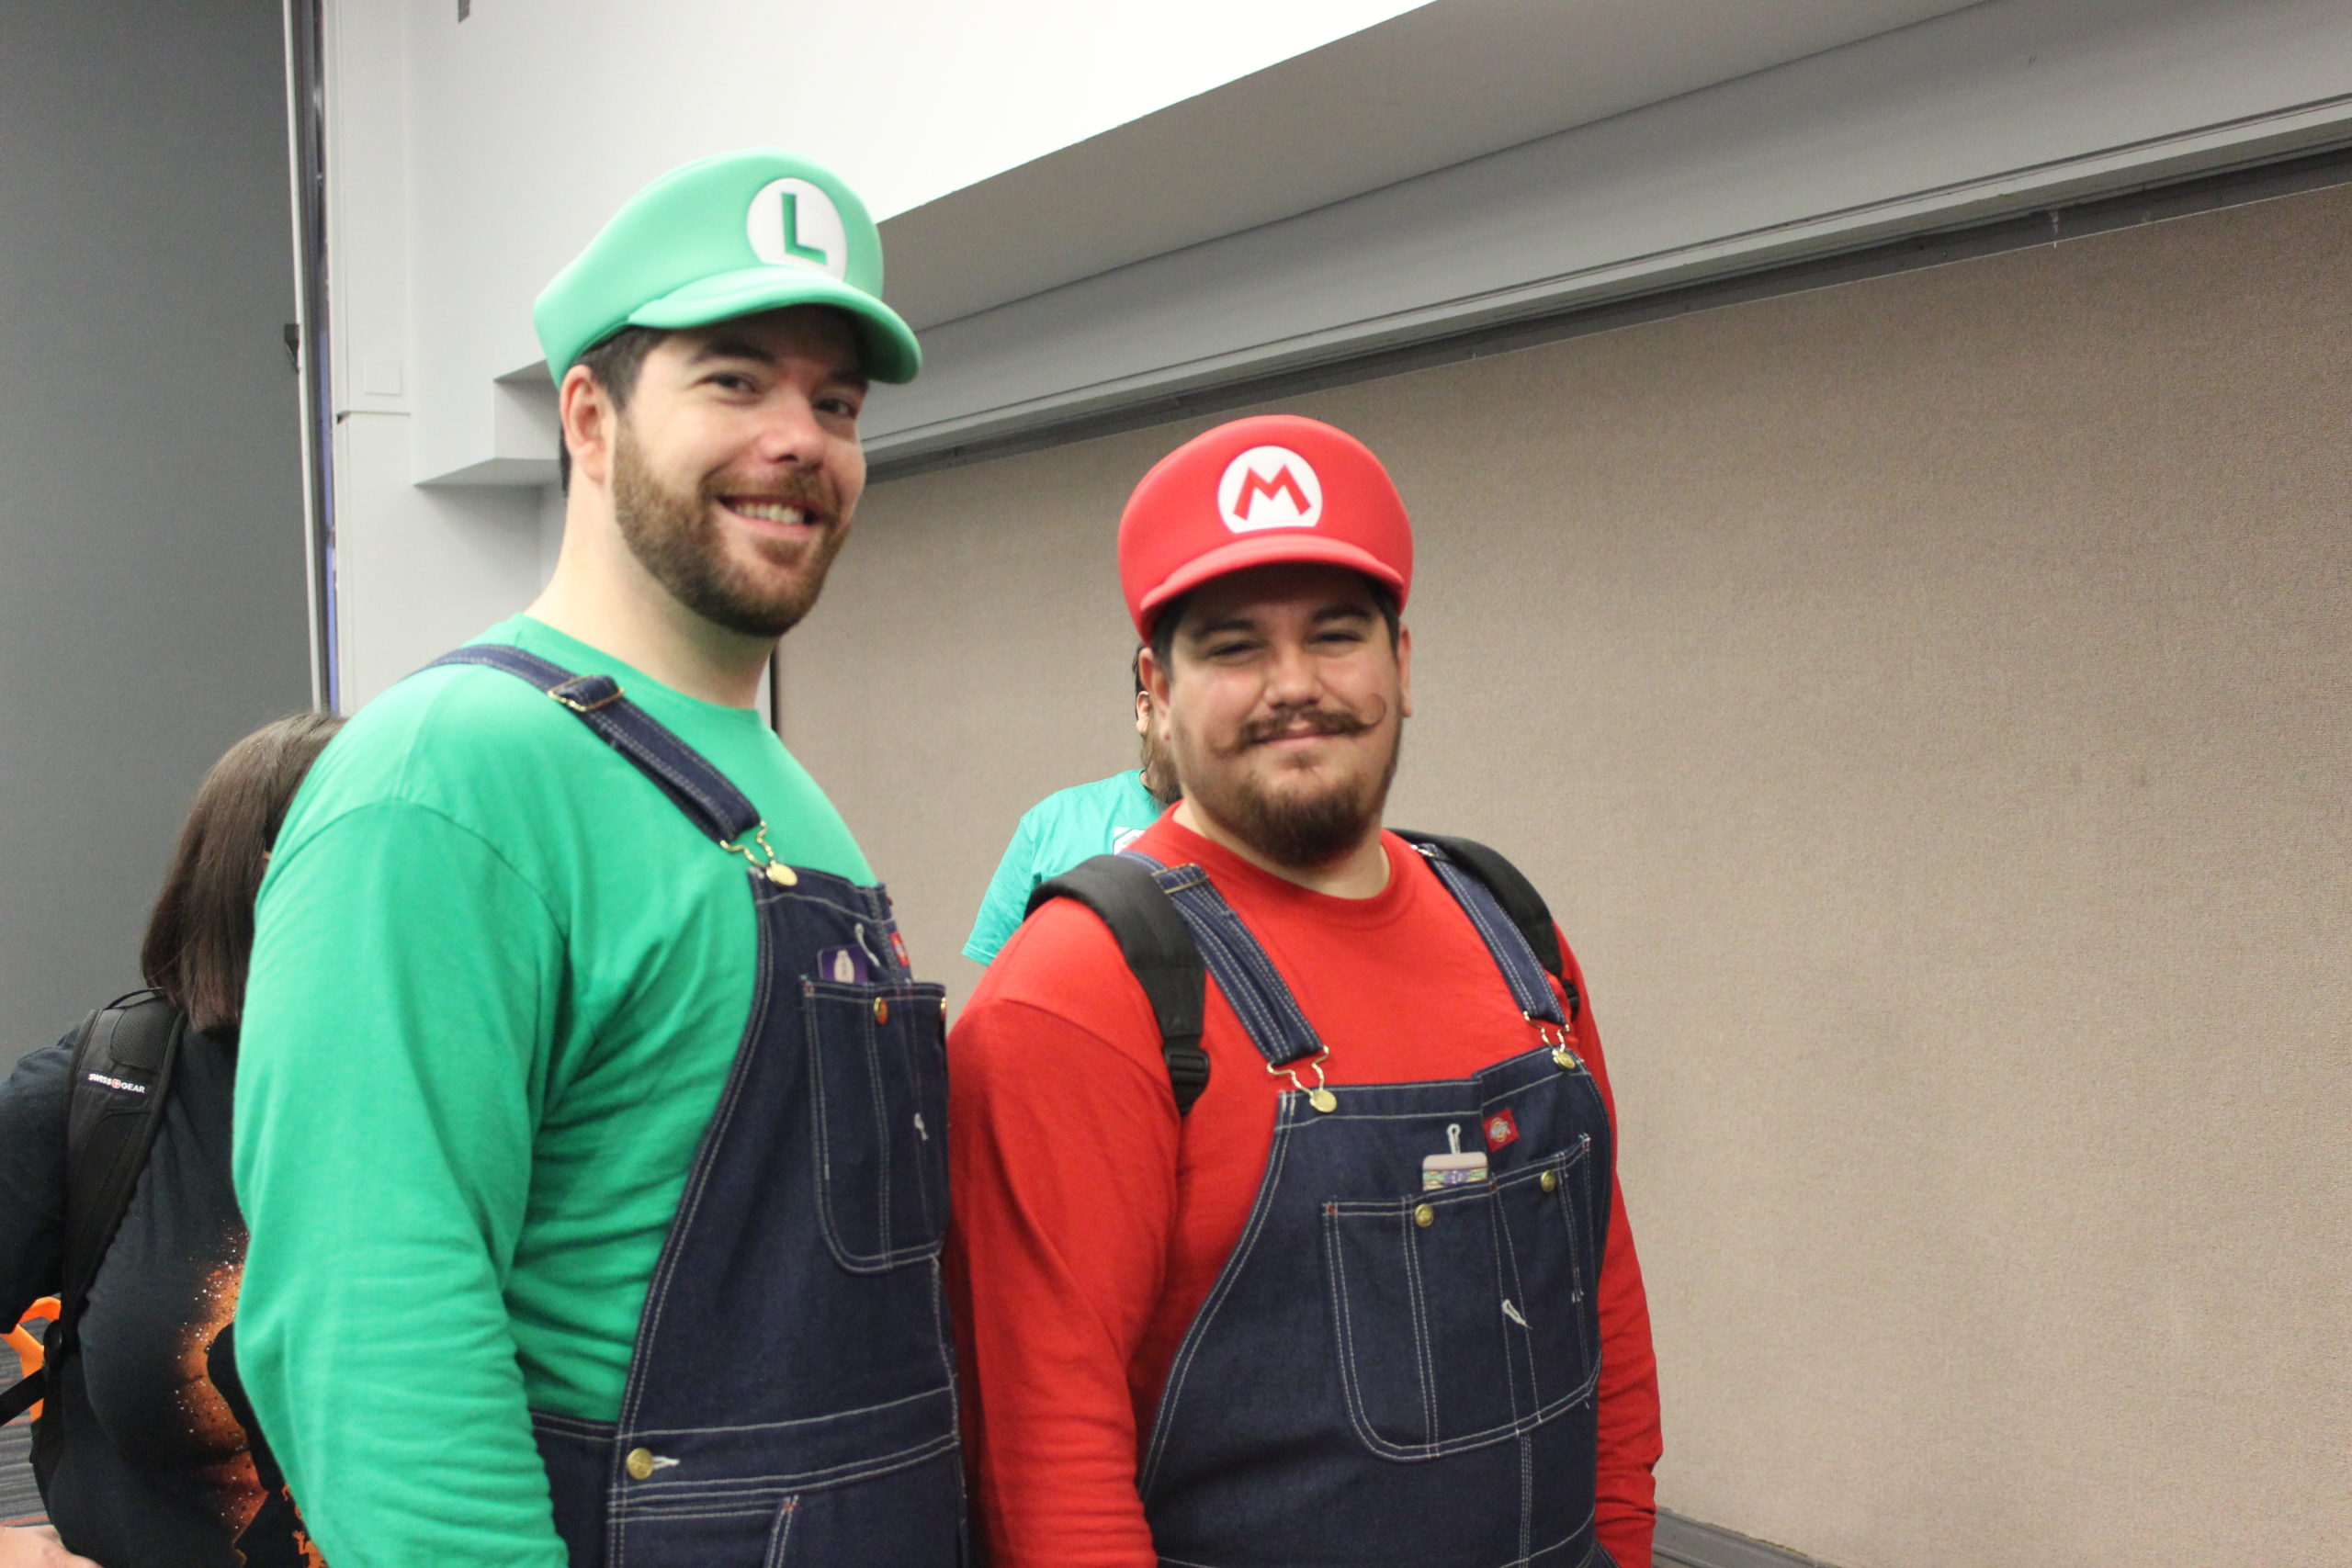 Le duo Mario et Luigi était sur place pour rencontrer ses fans